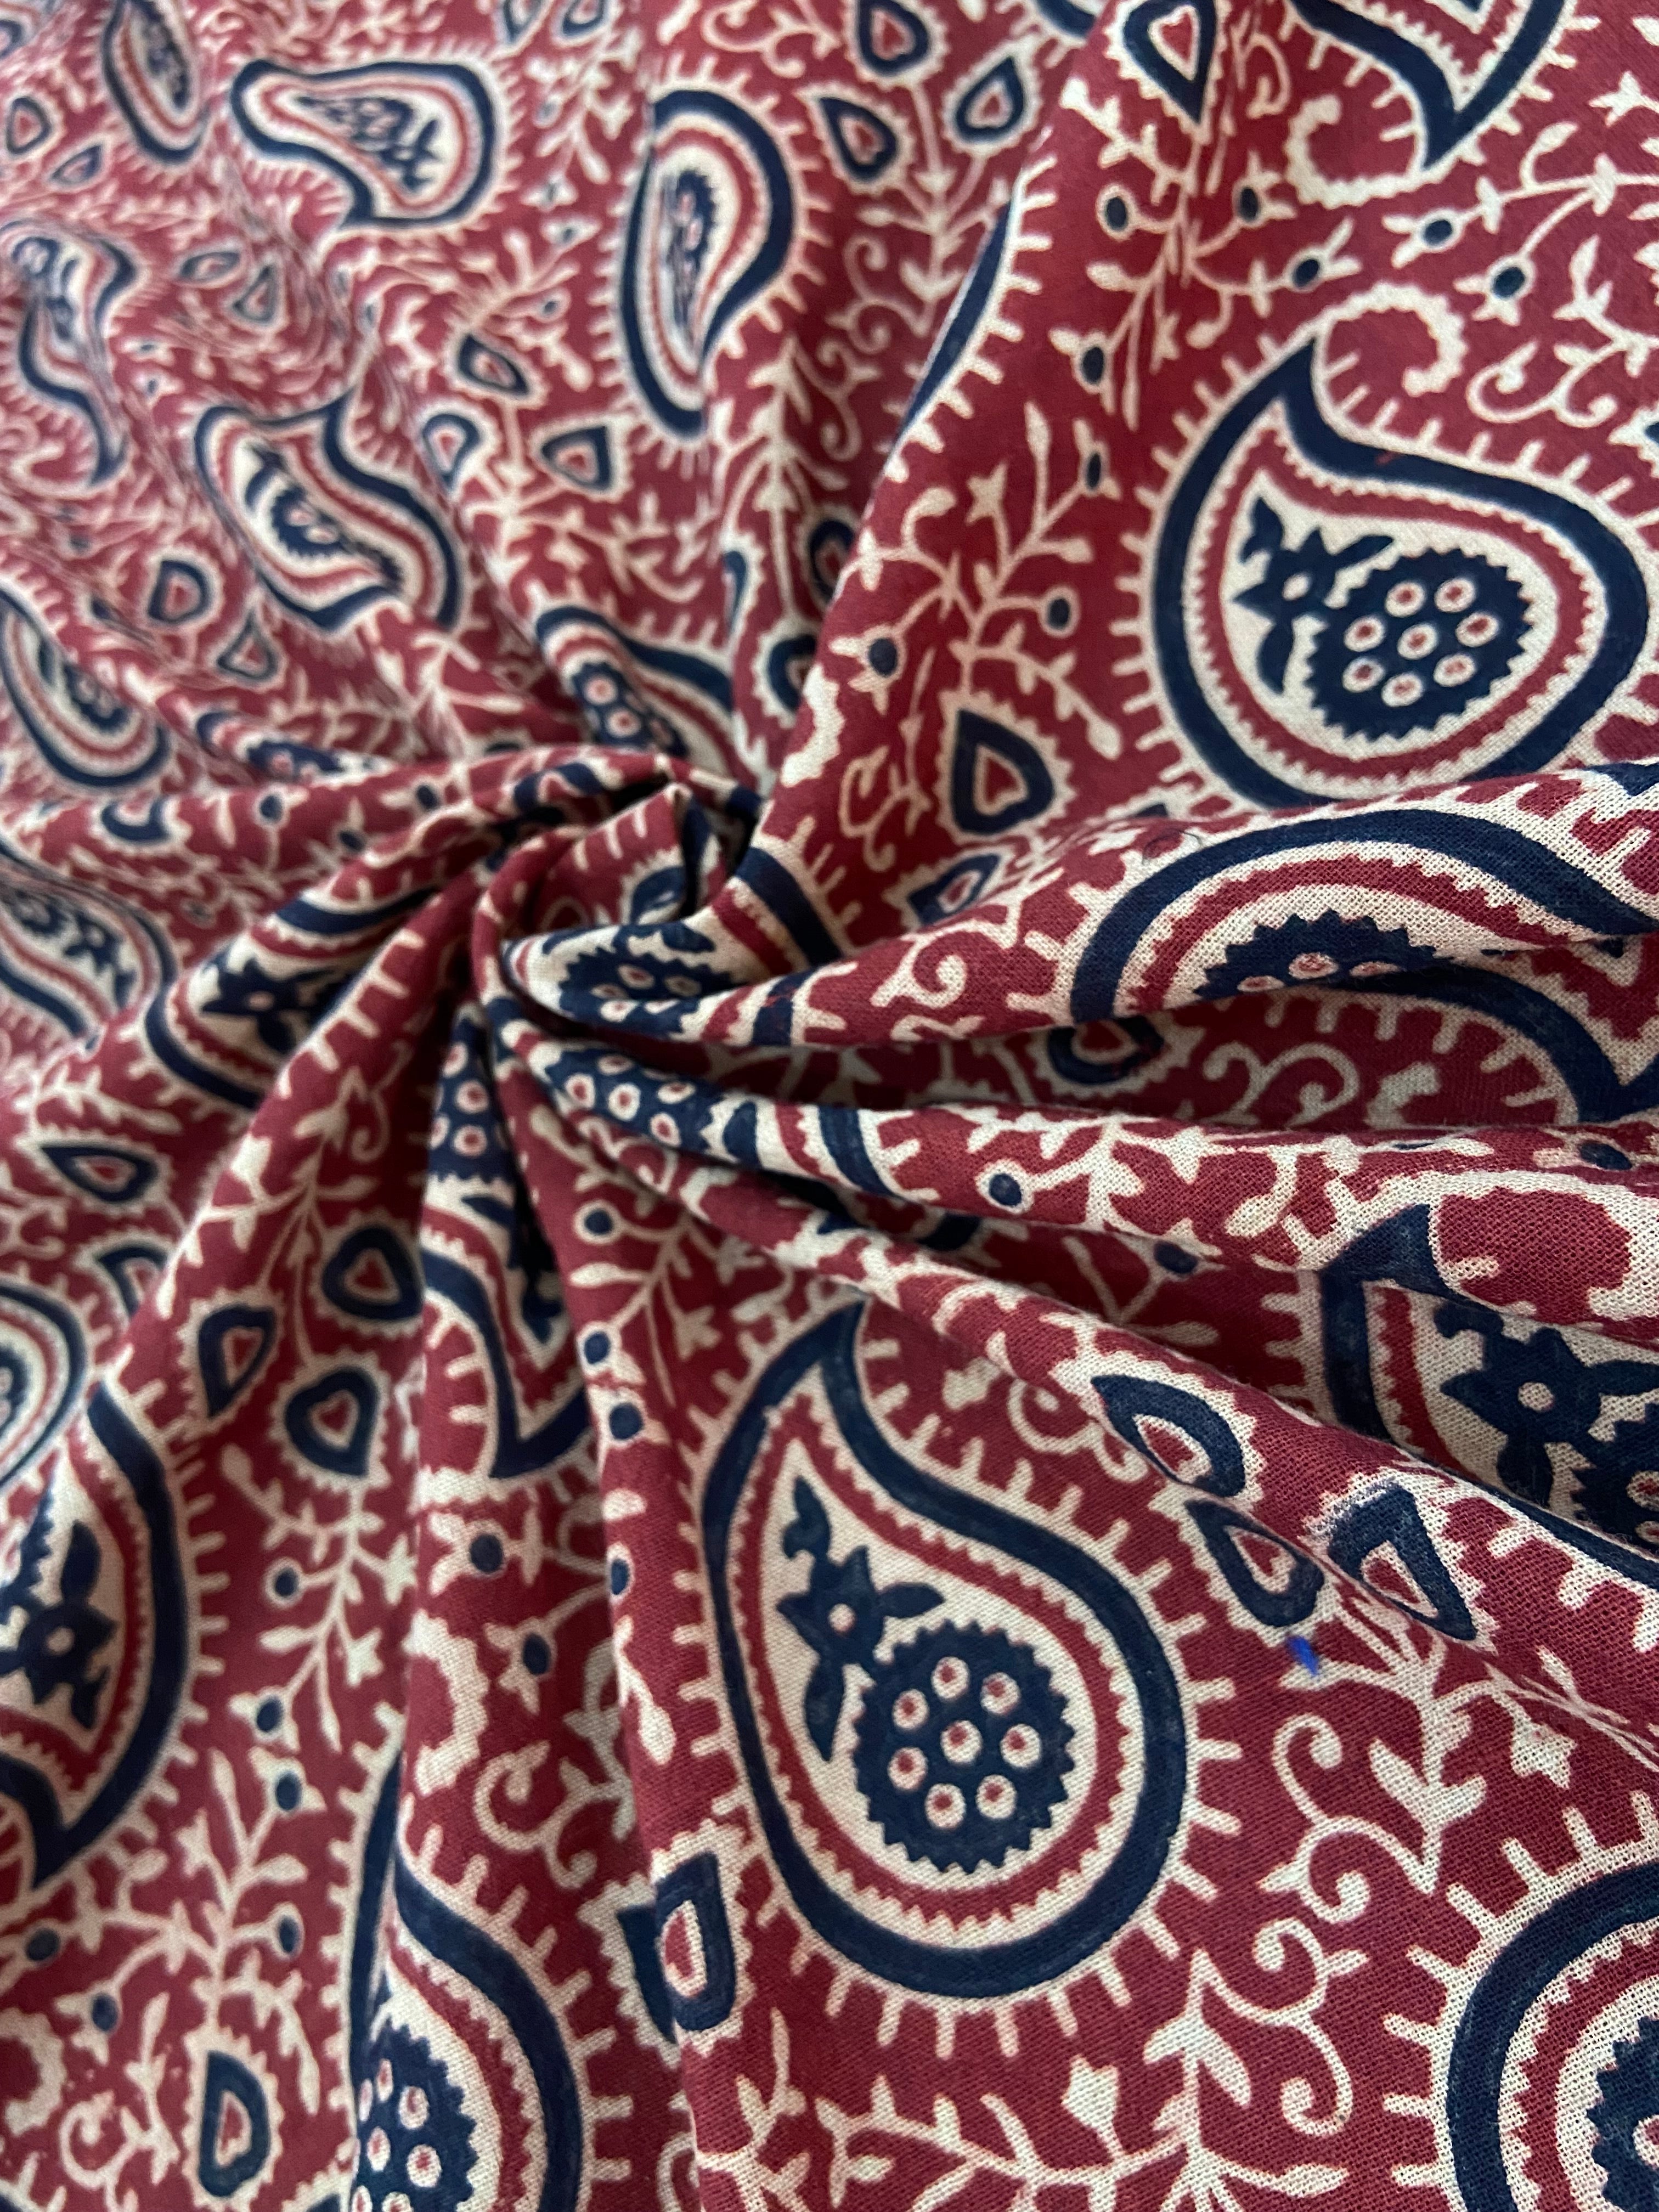 Fabric #041